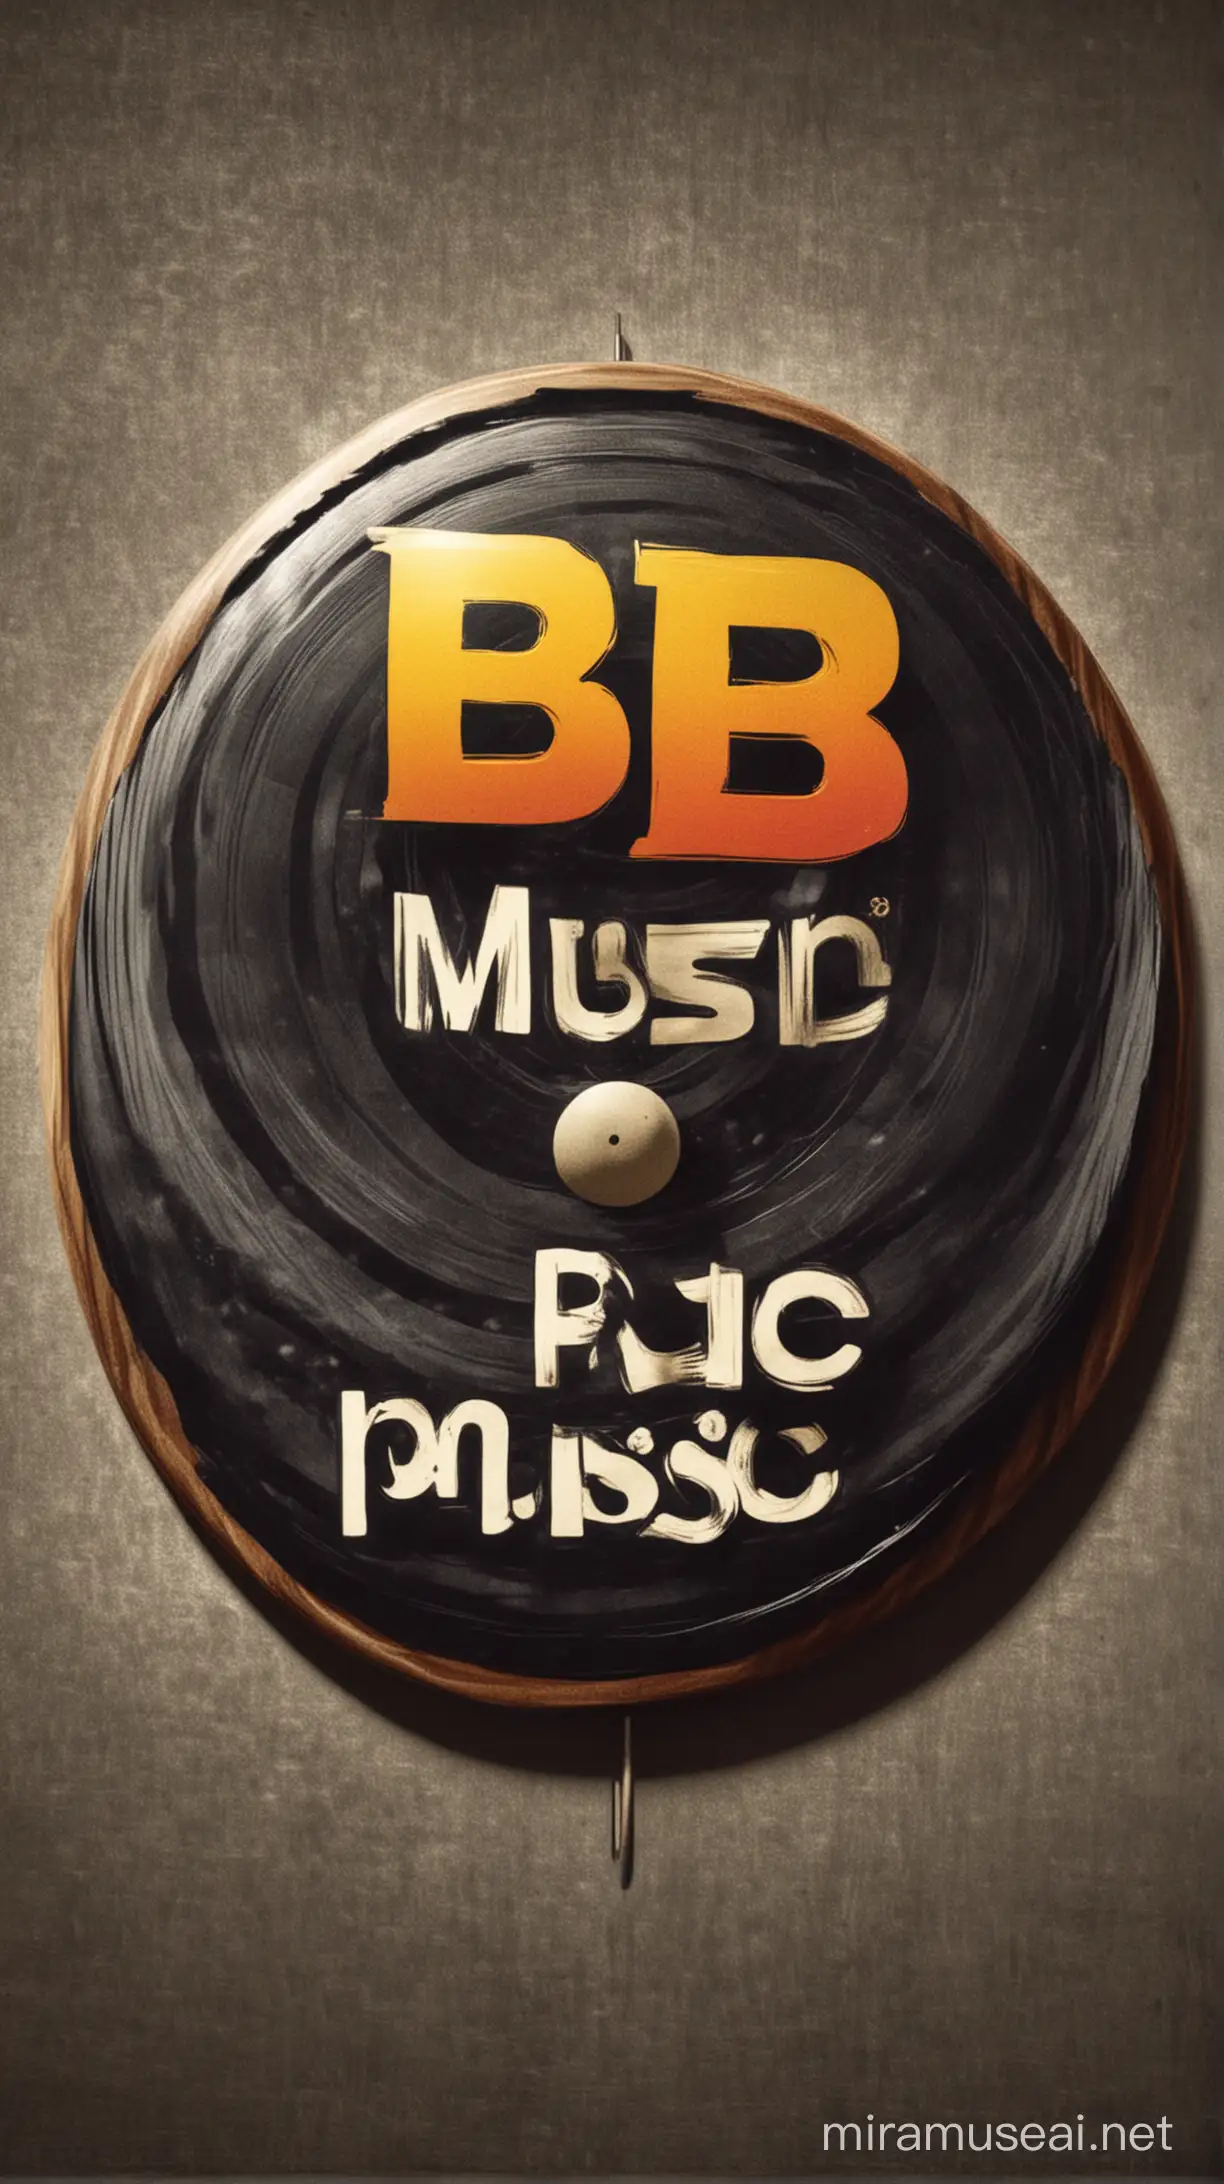 Логотип музыкального лейбла BB MUSIC